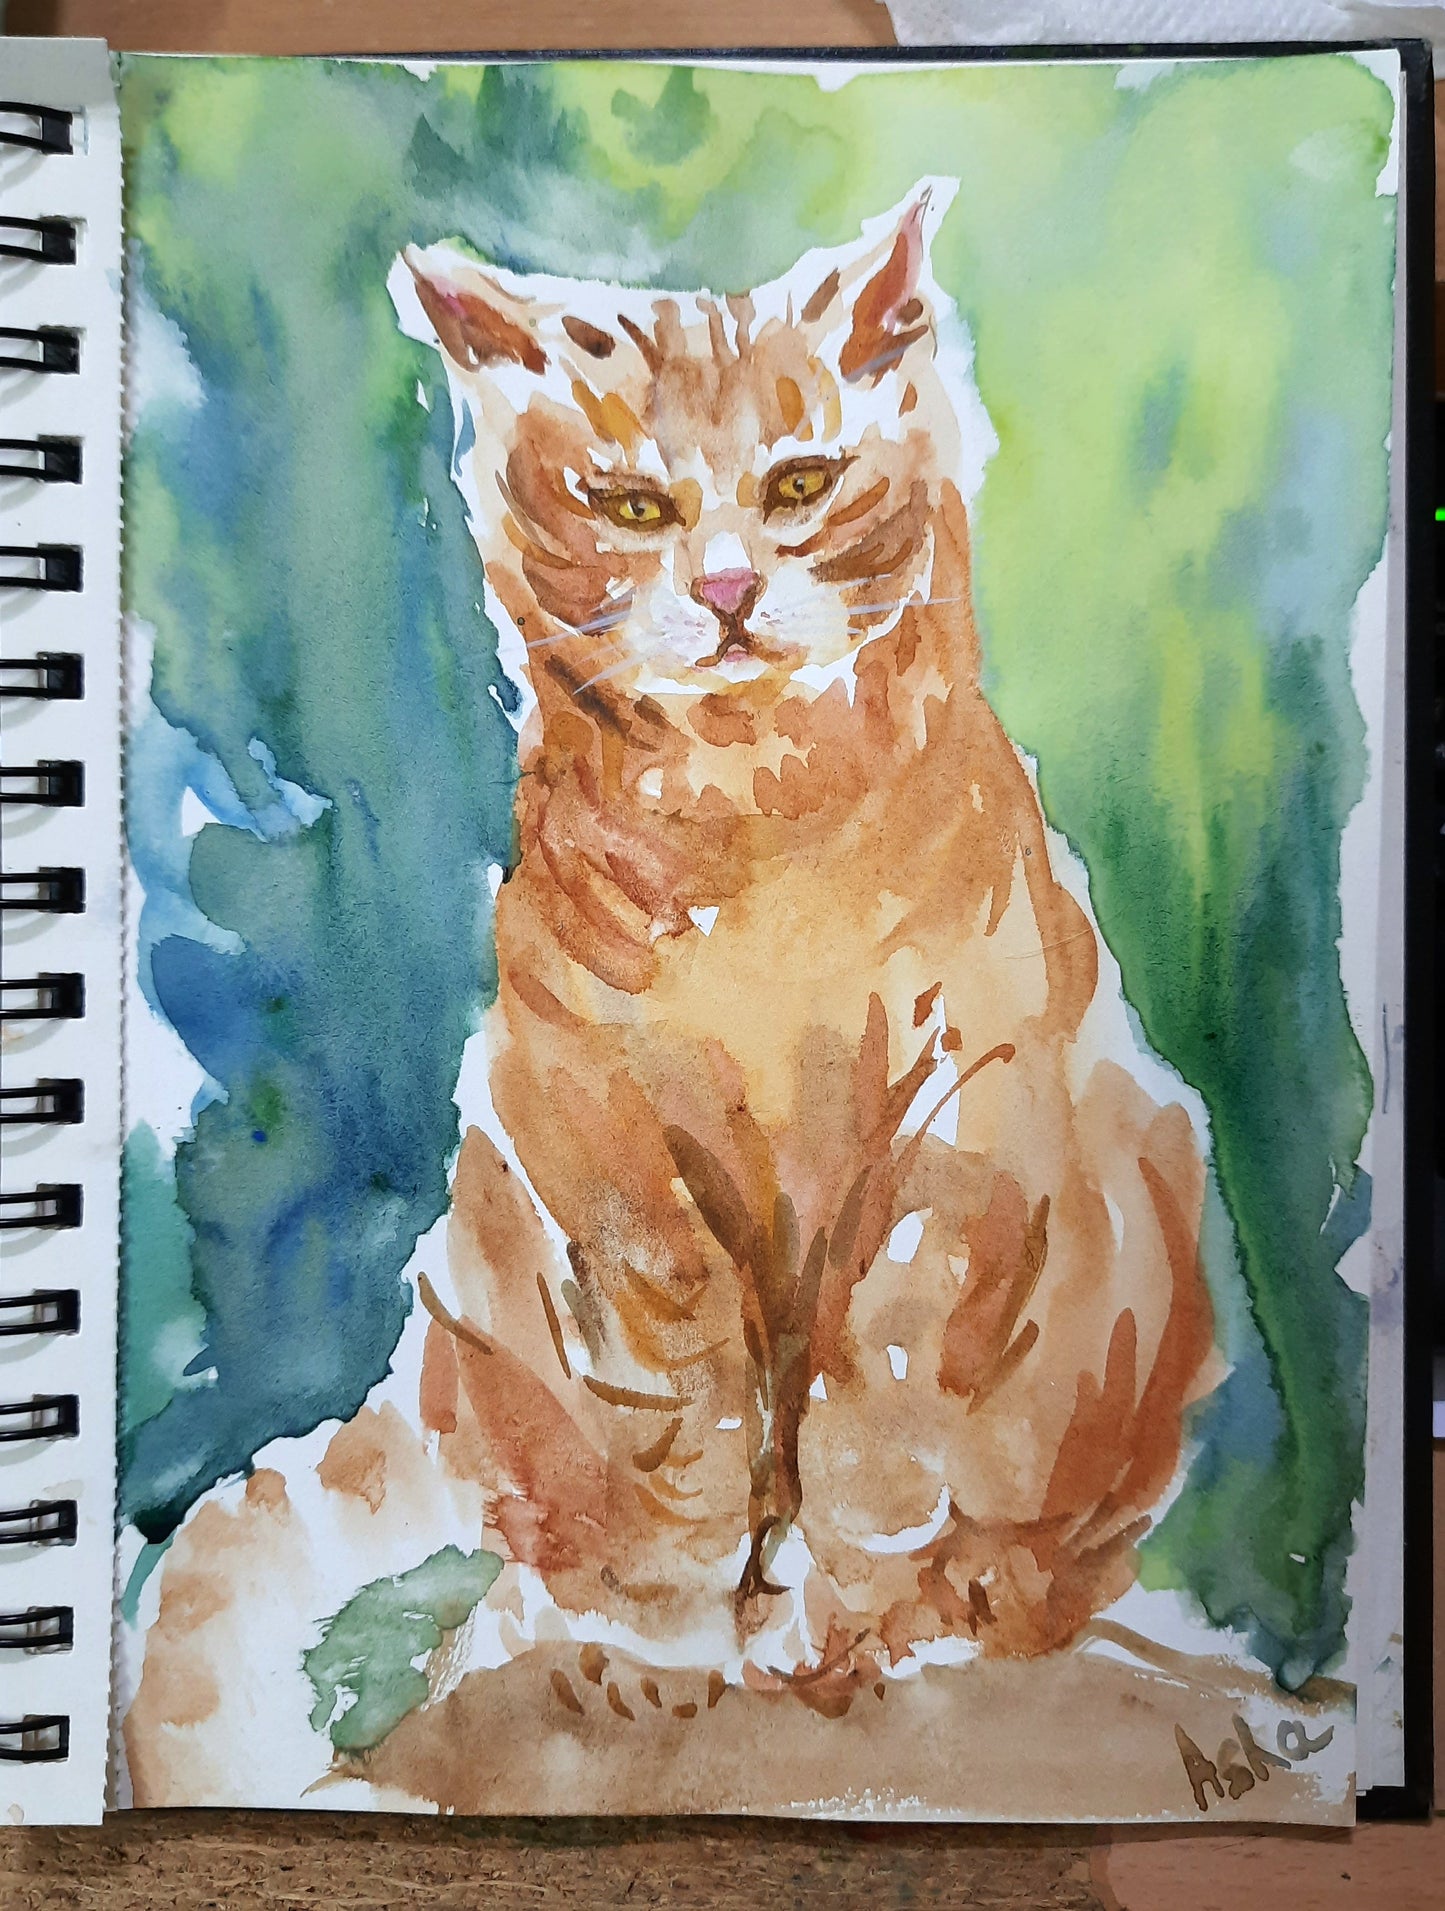 Un chat orange appelé Ranga, aquarelle sur papier